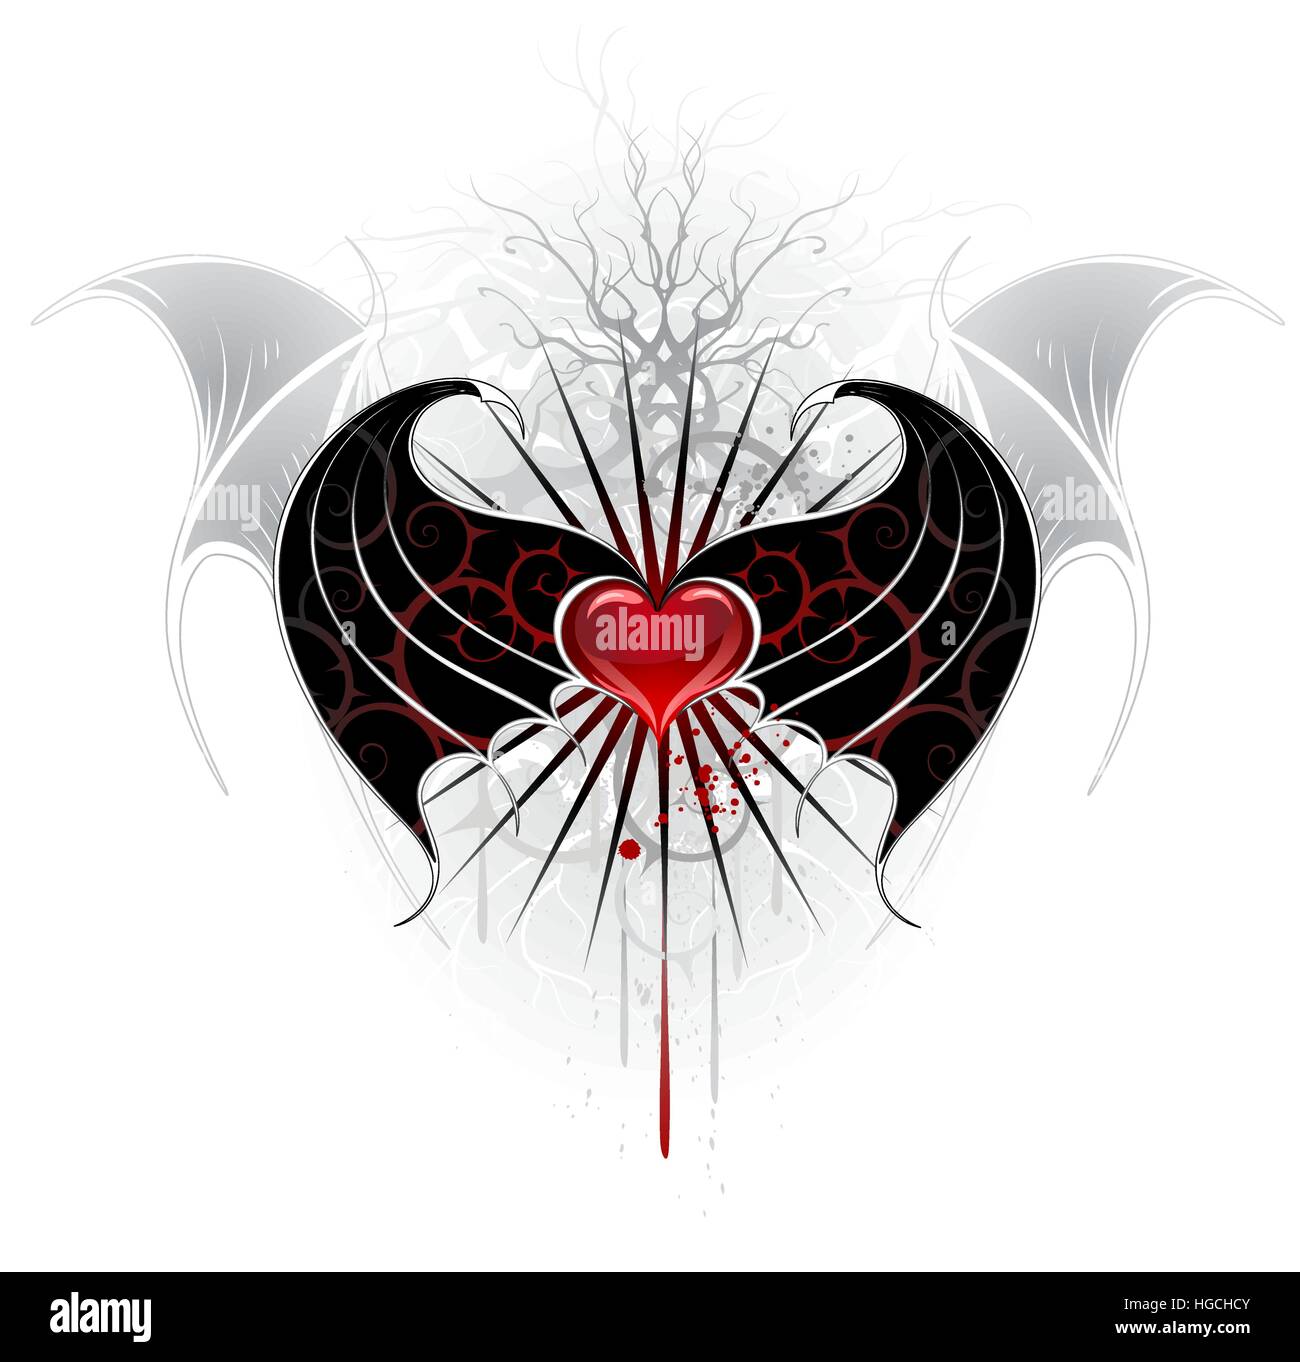 Artisticamente dipinte di rosso, il cuore di un vampiro con ali nere, decorato con un pattern di picchi. Illustrazione Vettoriale